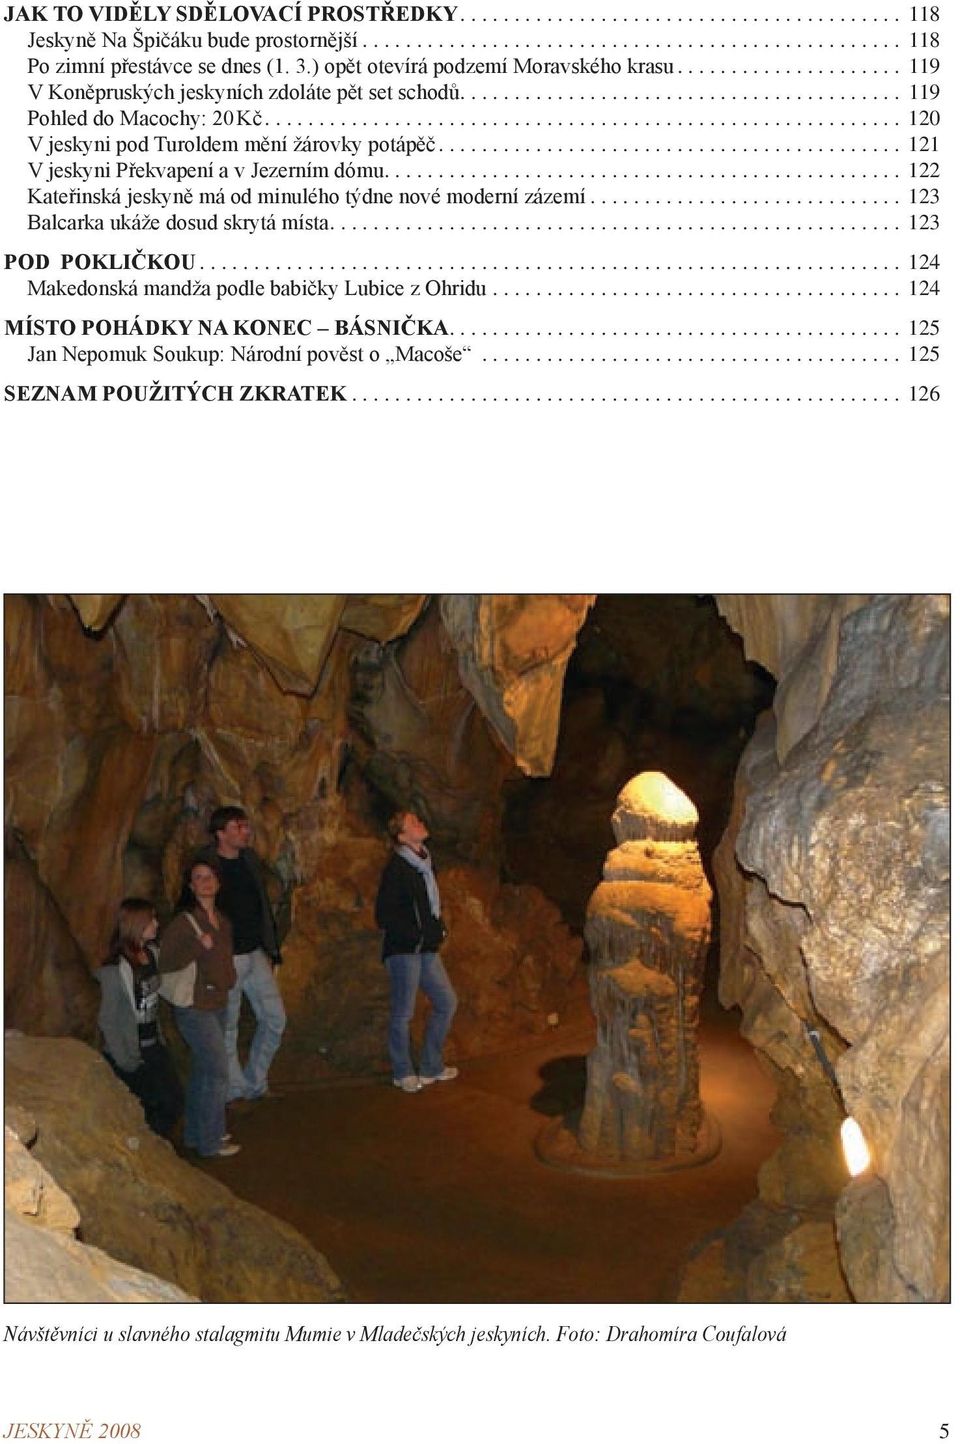 ...122 Kateřinská jeskyně má od minulého týdne nové moderní zázemí...123 Balcarka ukáže dosud skrytá místa....123 POD POKLIČKOU... 124 Makedonská mandža podle babičky Lubice z Ohridu.